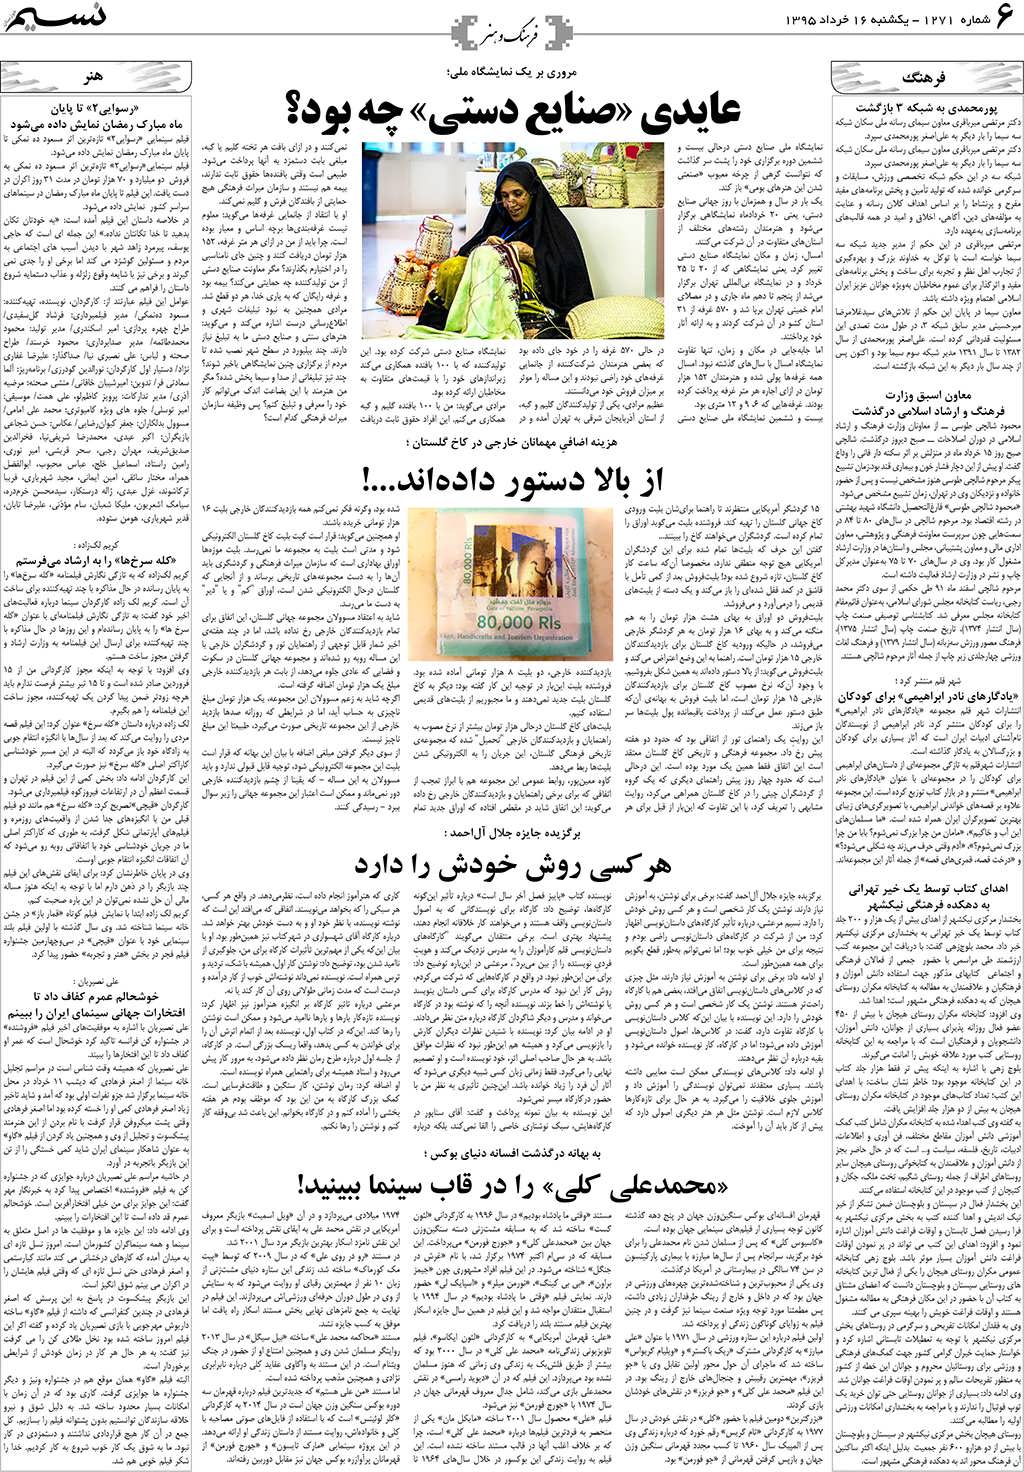 صفحه فرهنگ و هنر روزنامه نسیم شماره 1271